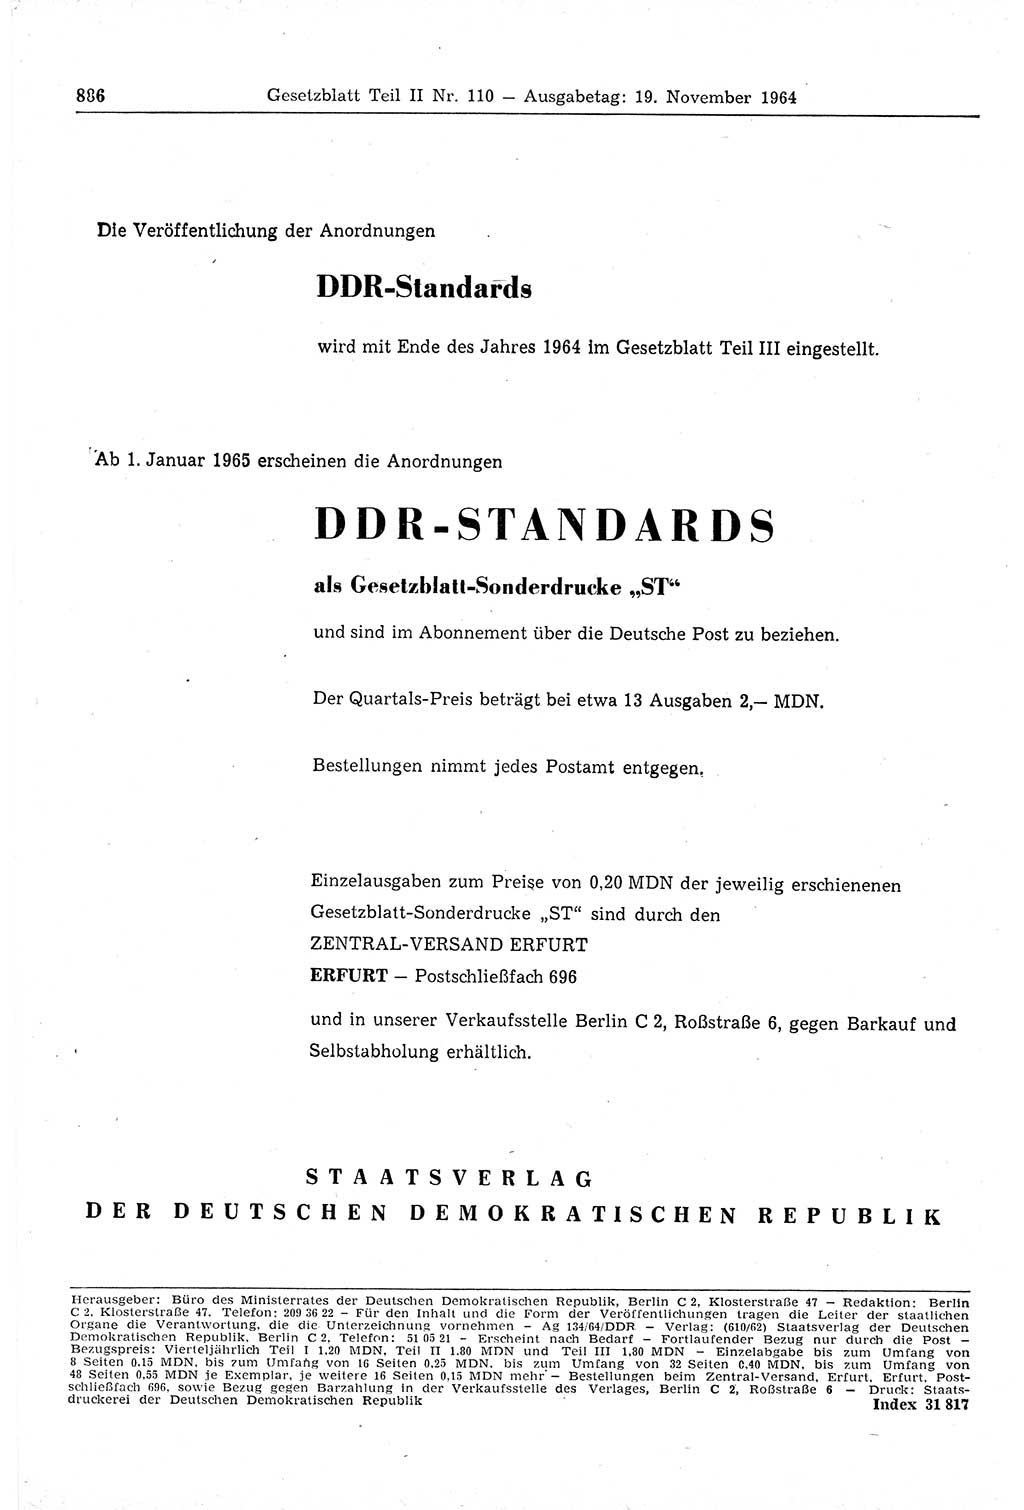 Gesetzblatt (GBl.) der Deutschen Demokratischen Republik (DDR) Teil ⅠⅠ 1964, Seite 886 (GBl. DDR ⅠⅠ 1964, S. 886)